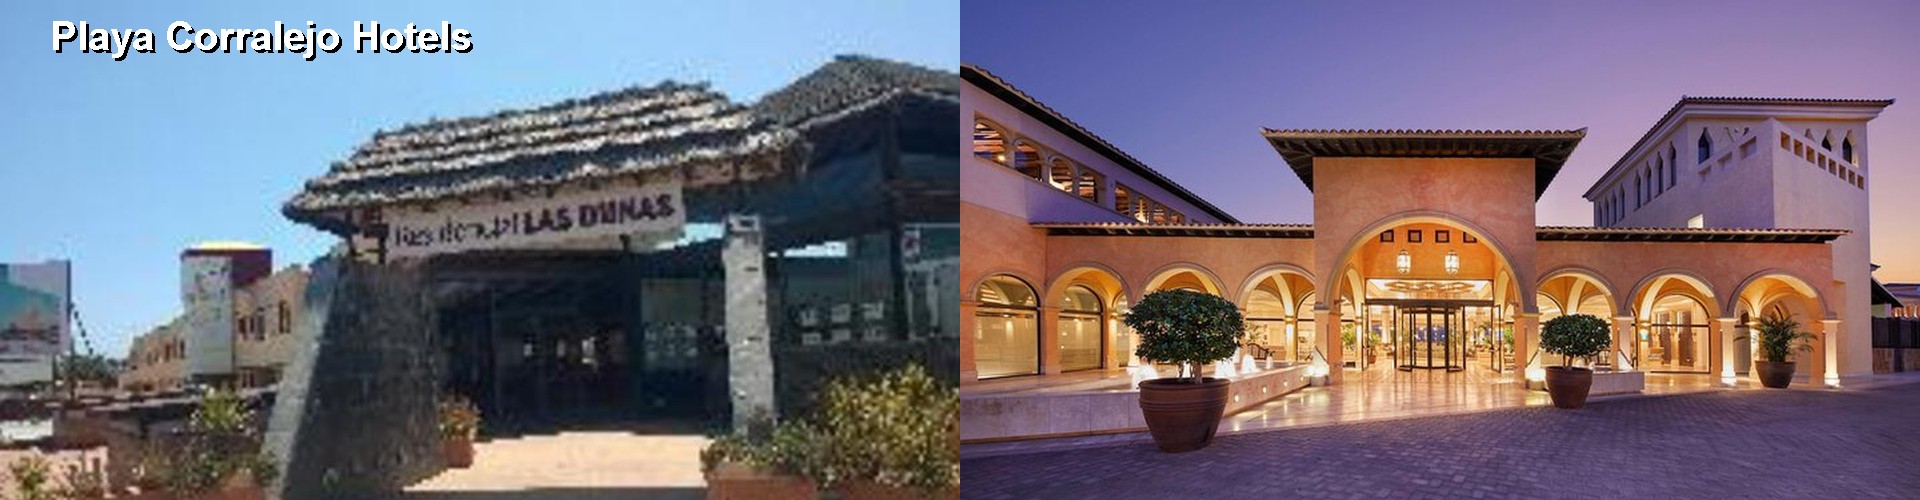 5 Best Hotels near Playa Corralejo